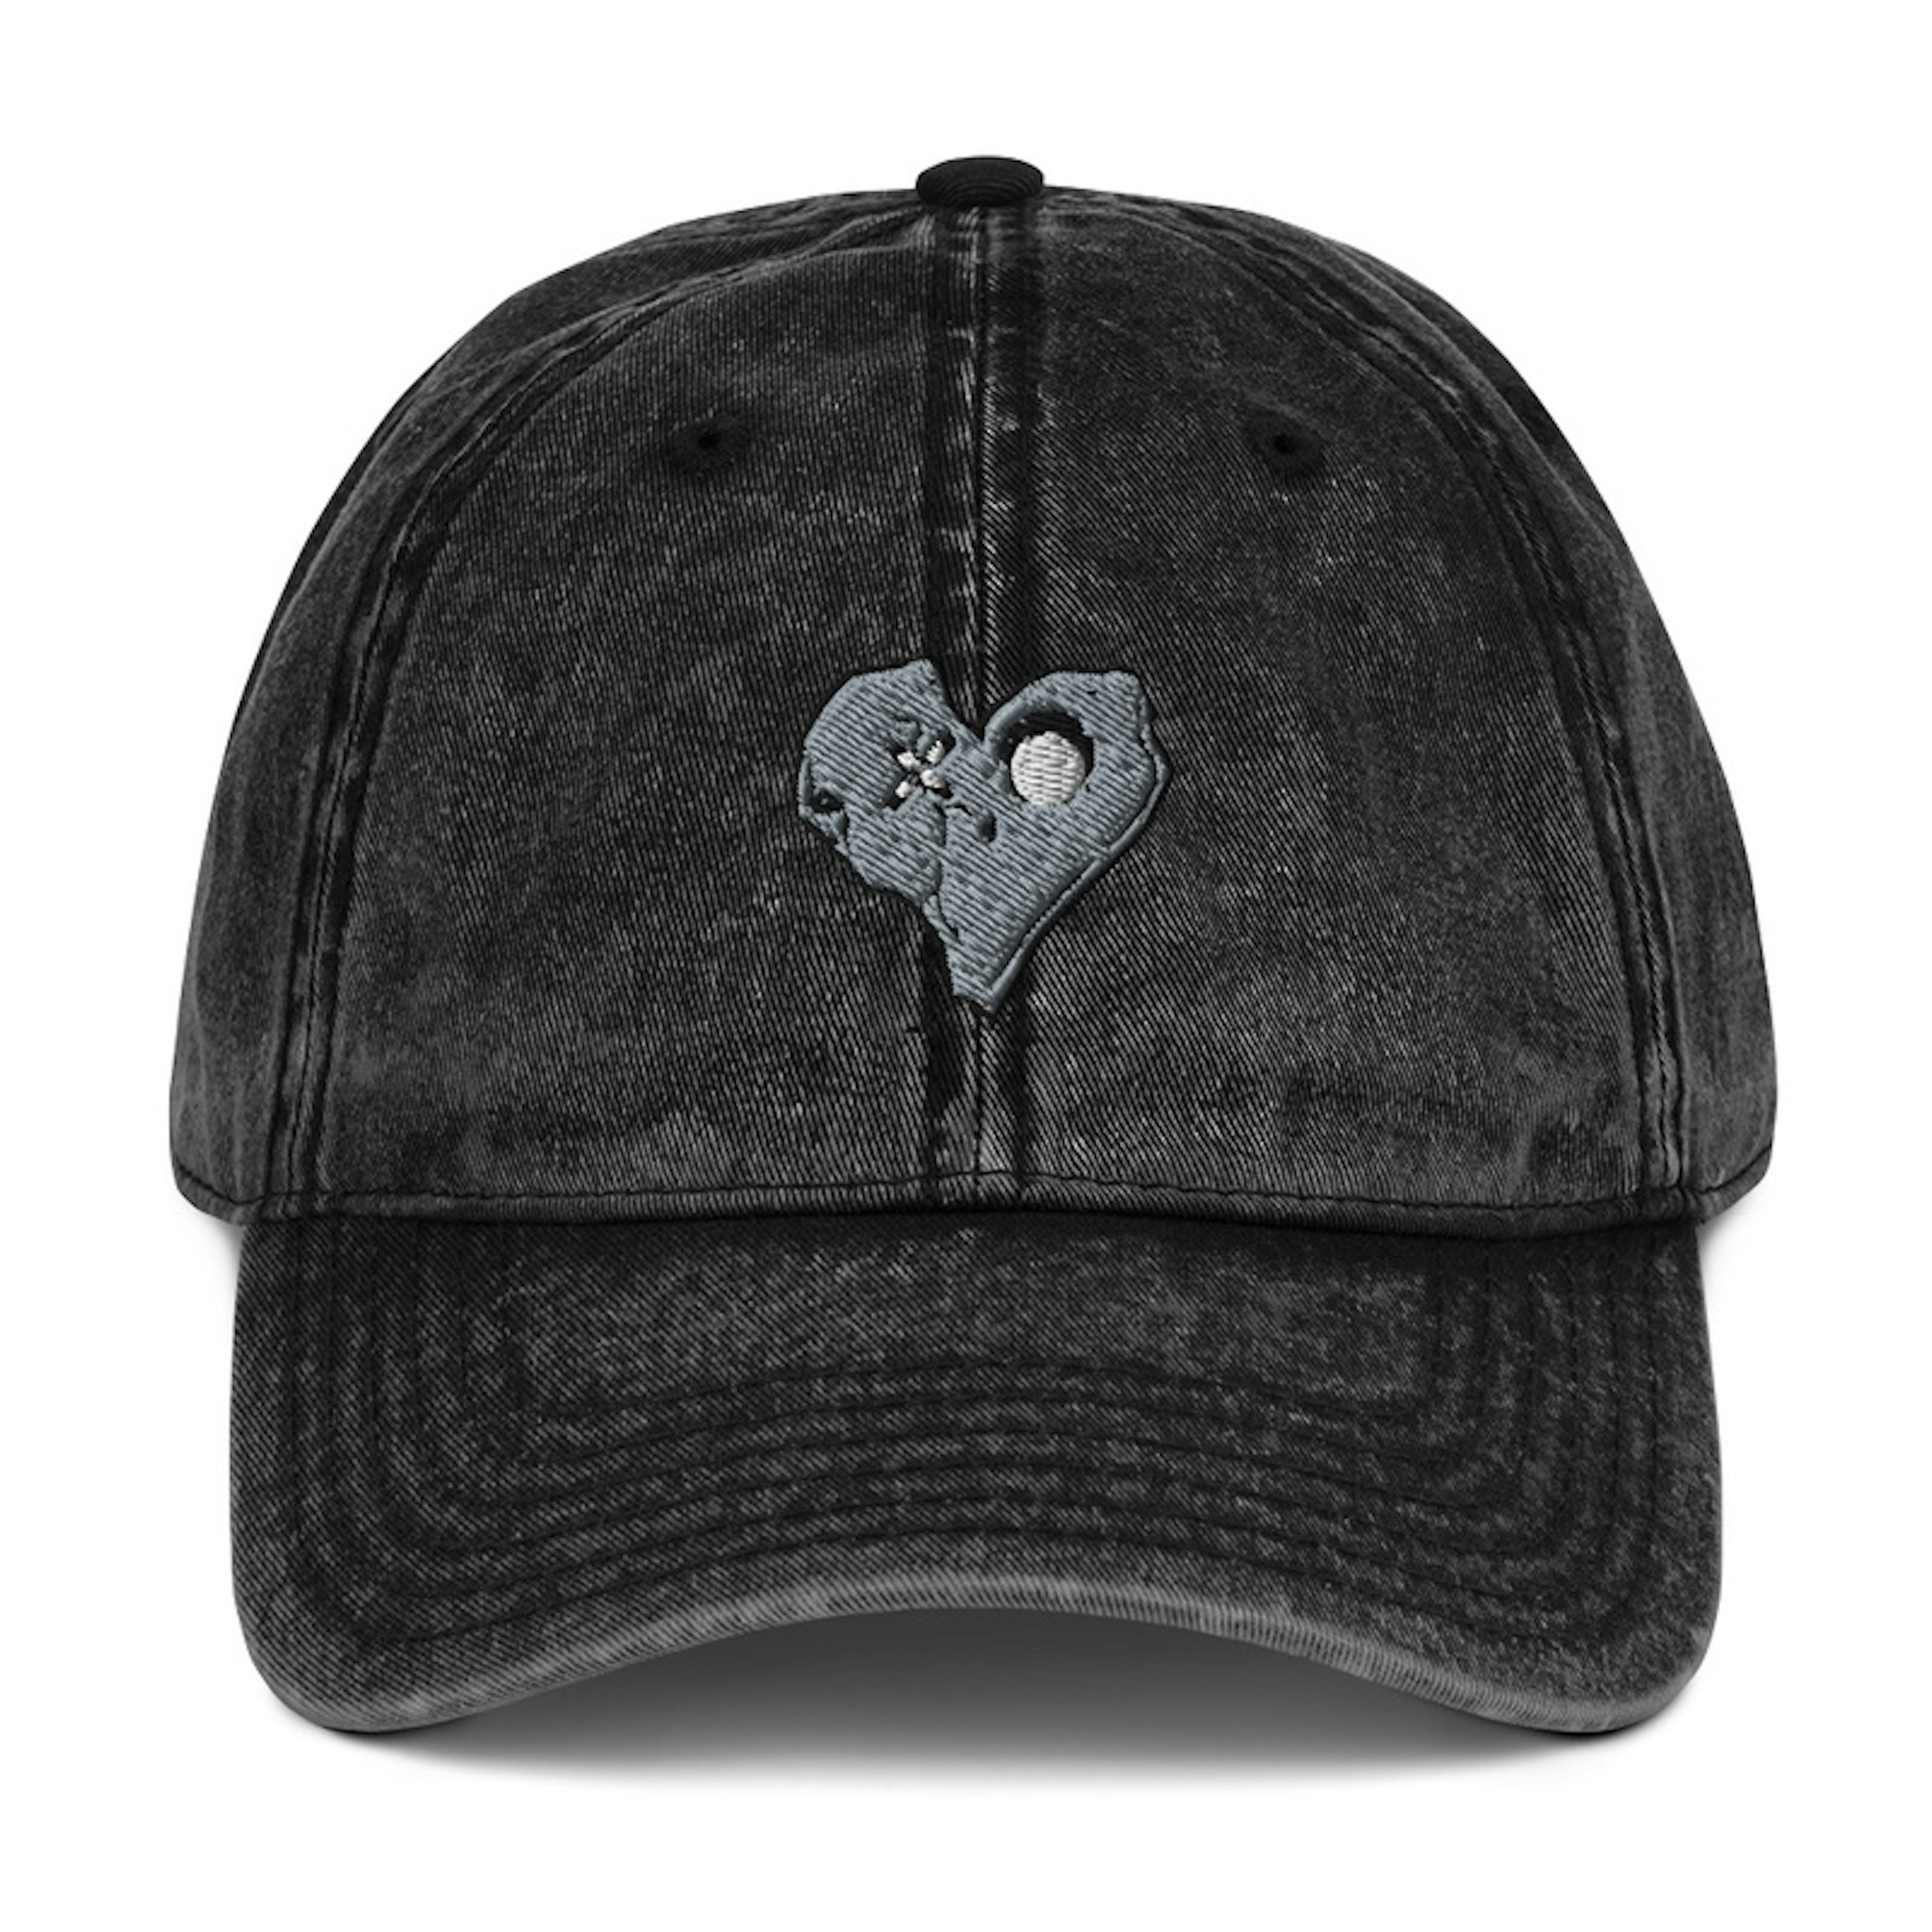 Skully Heart cap